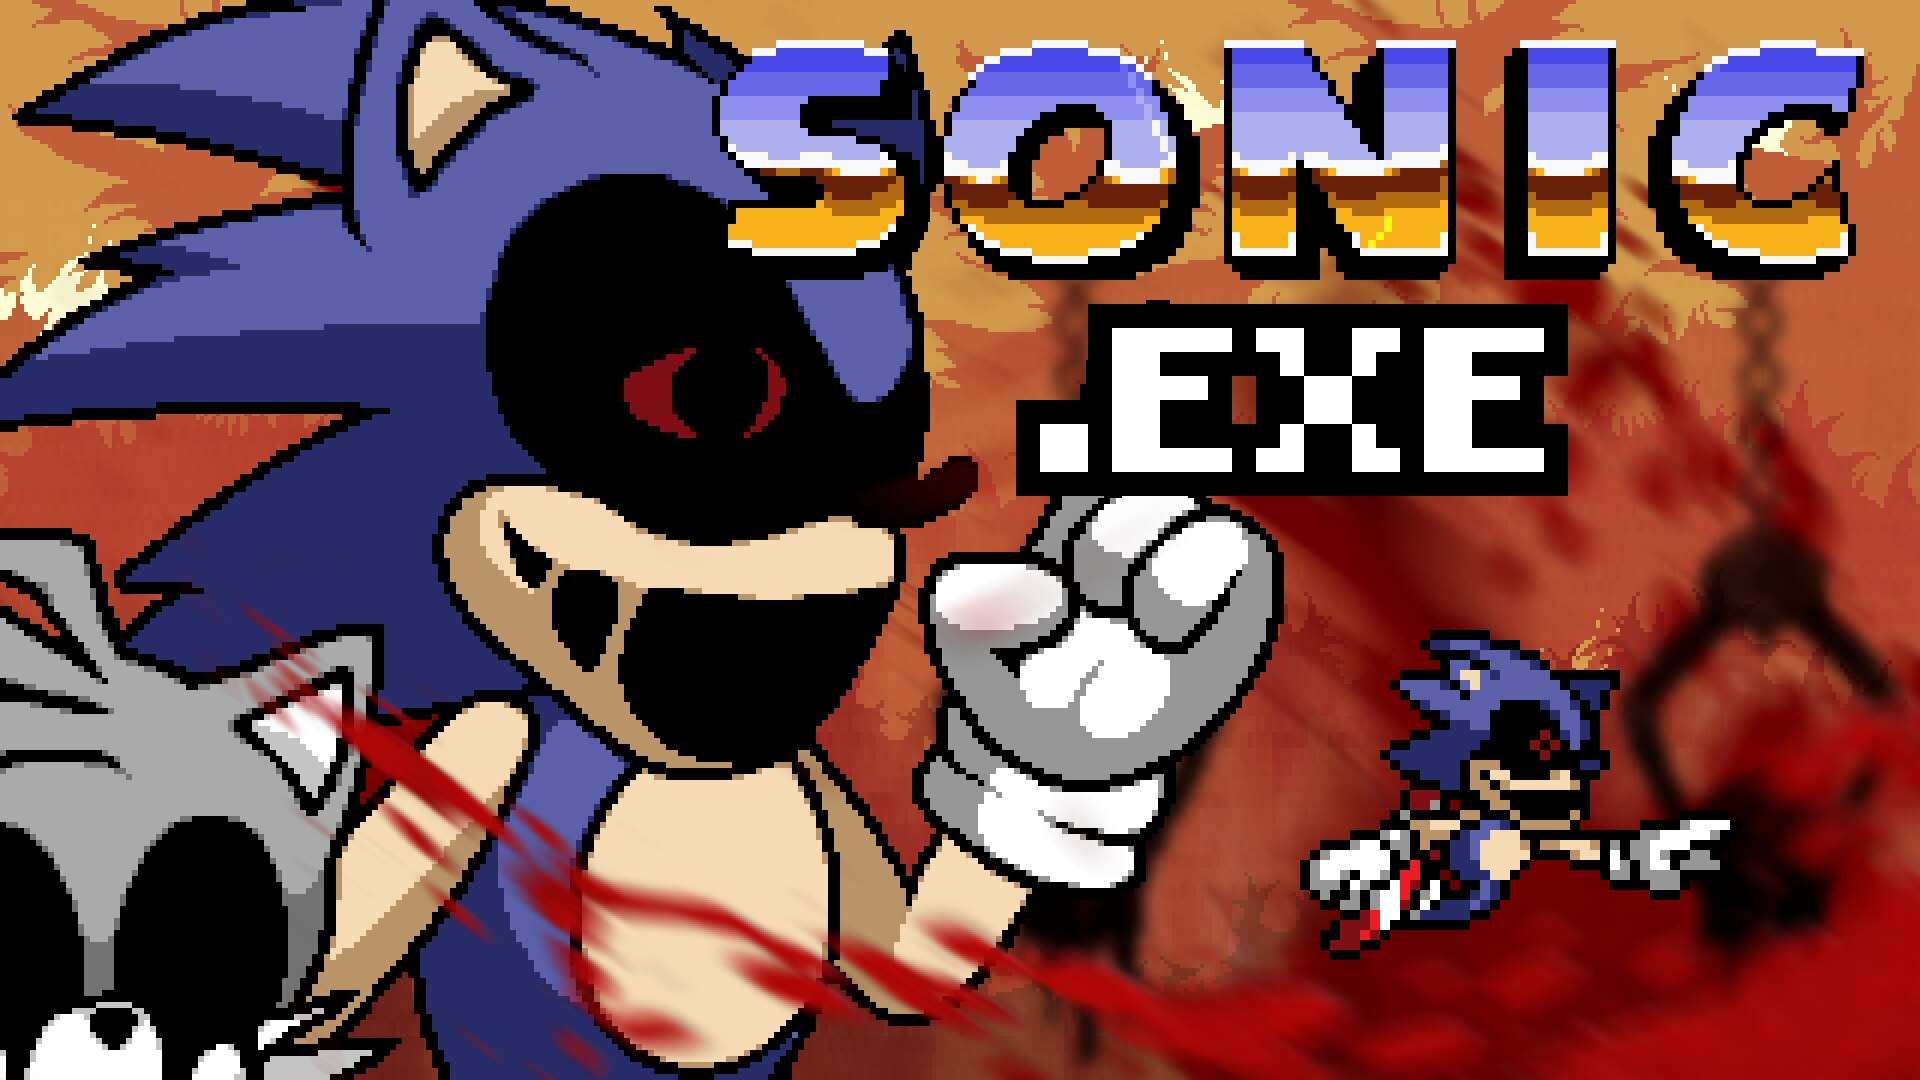 Sonic Vs Sonic Exe, Sonic.EXE HD wallpaper